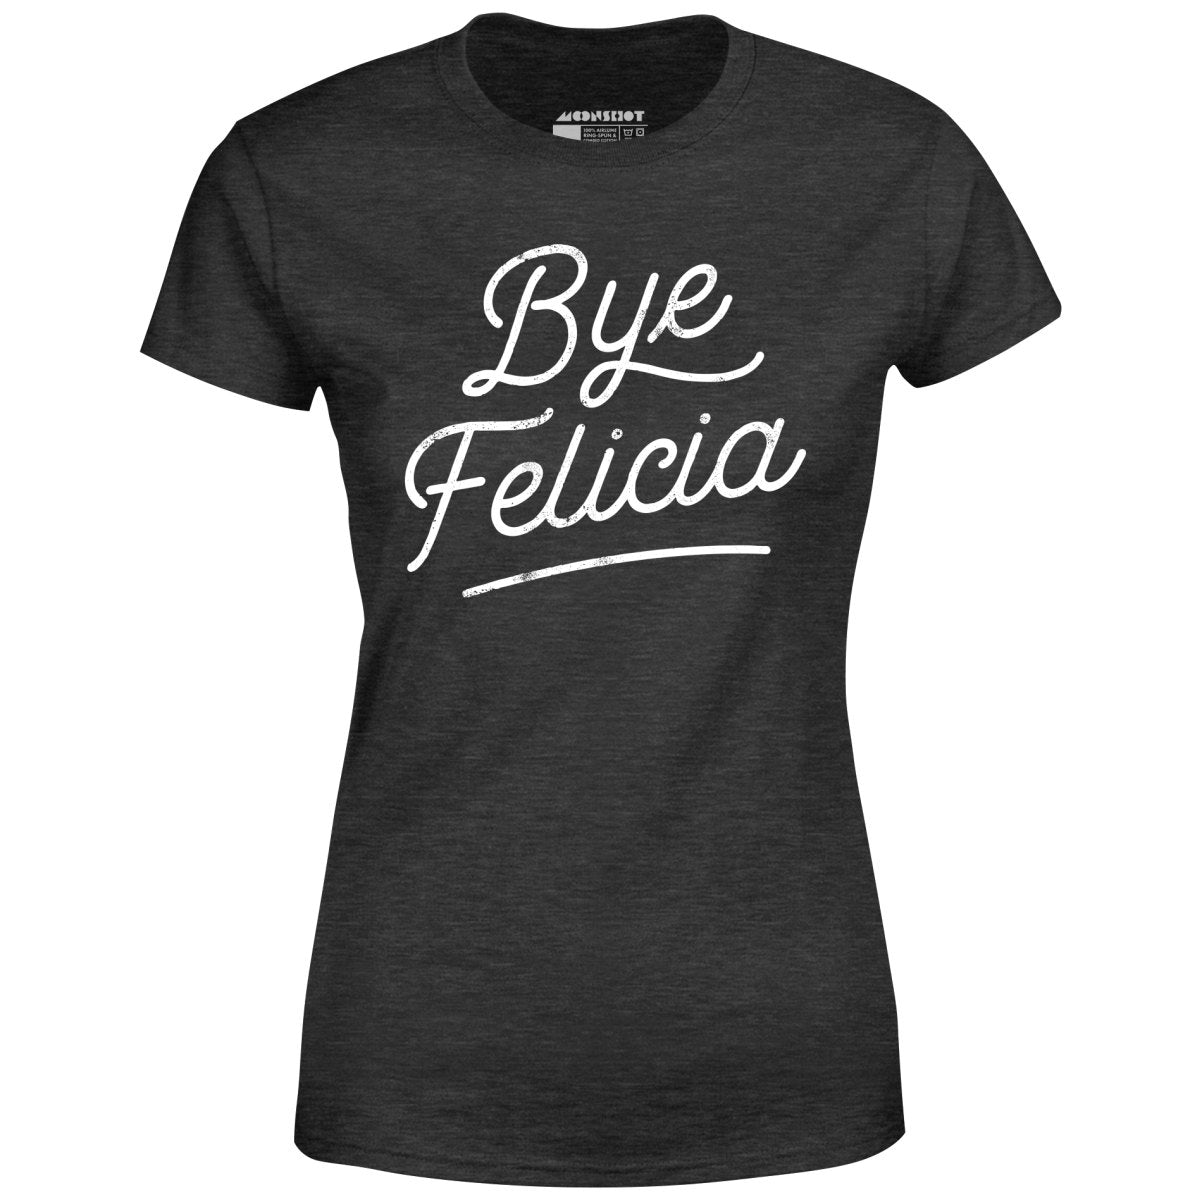 Bye Felicia - Women's T-Shirt